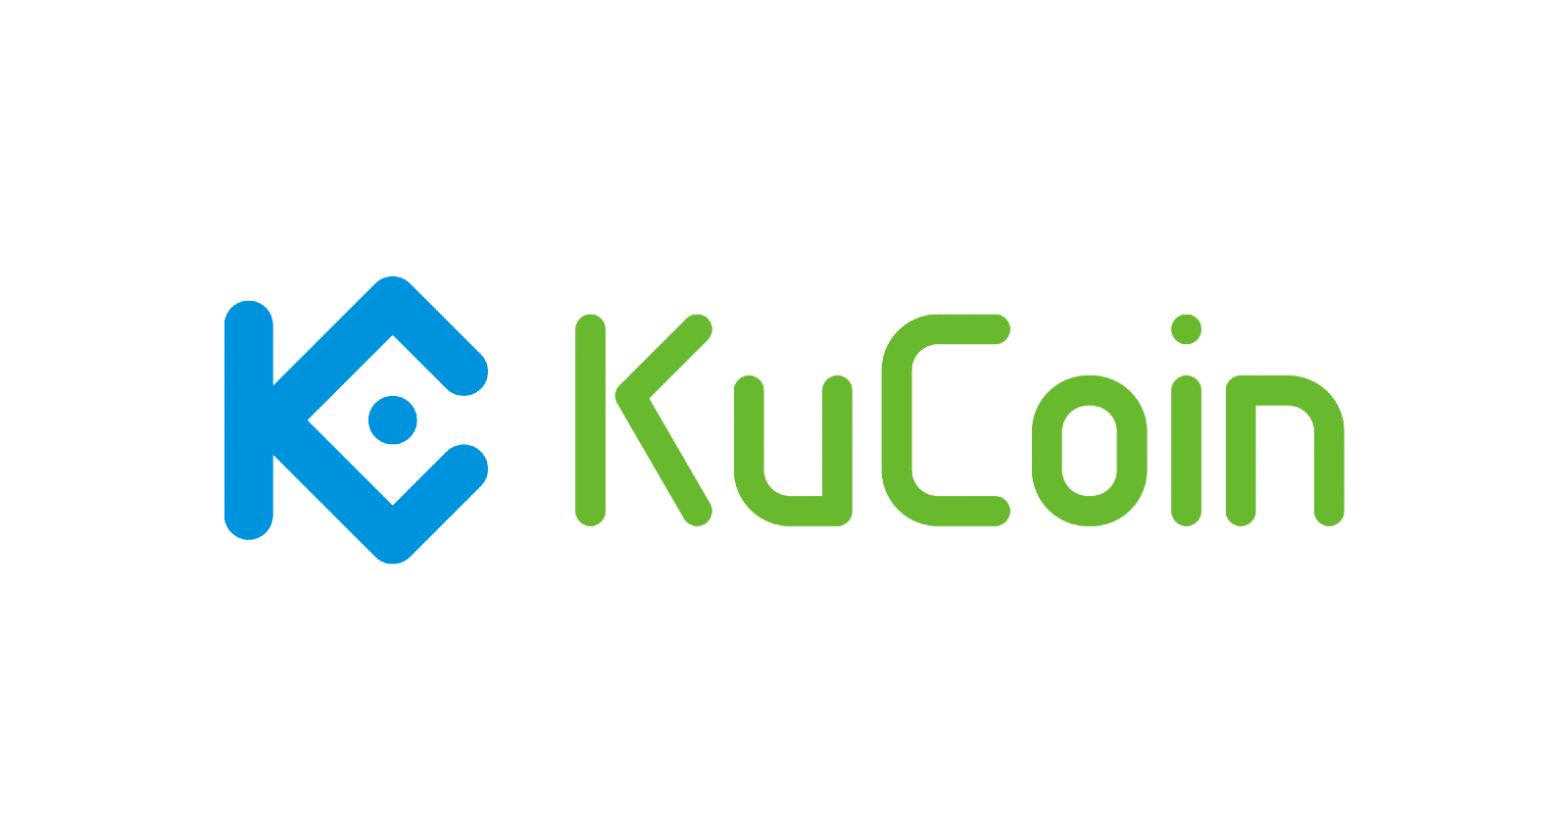 kucoin-logo